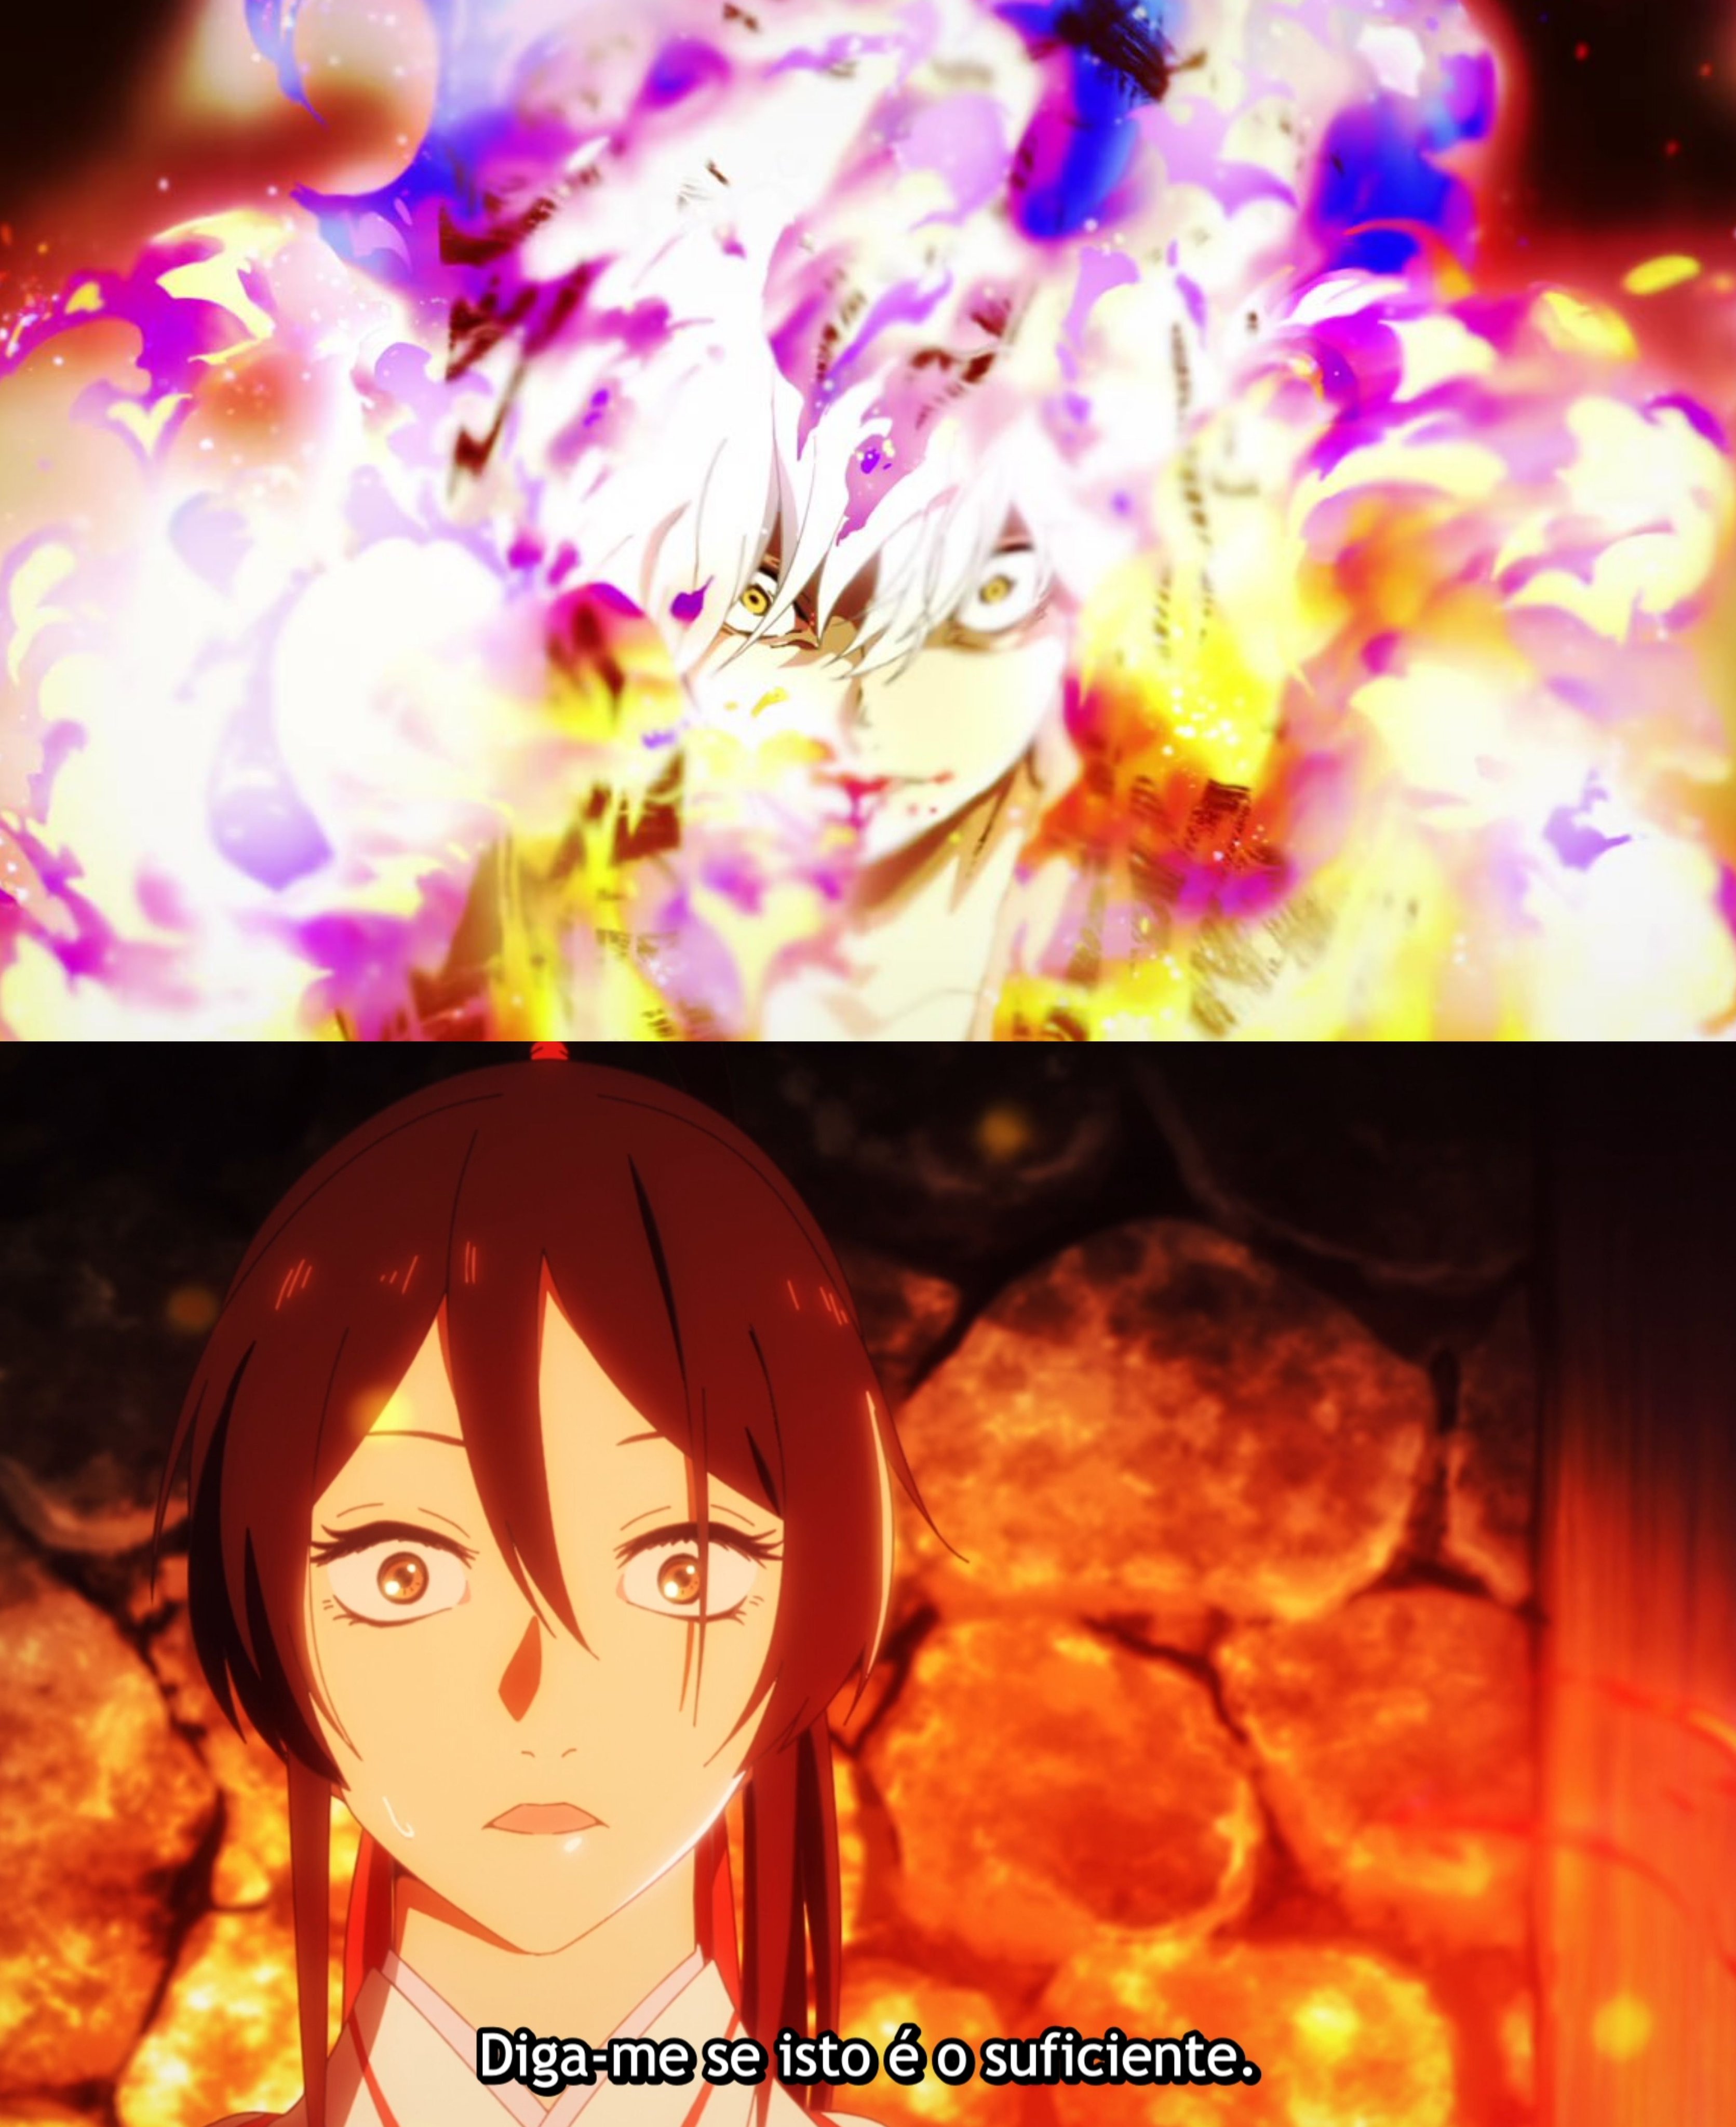 Gabiru o vazio - Hell's Paradise #anime #animetiktok #animebrasil